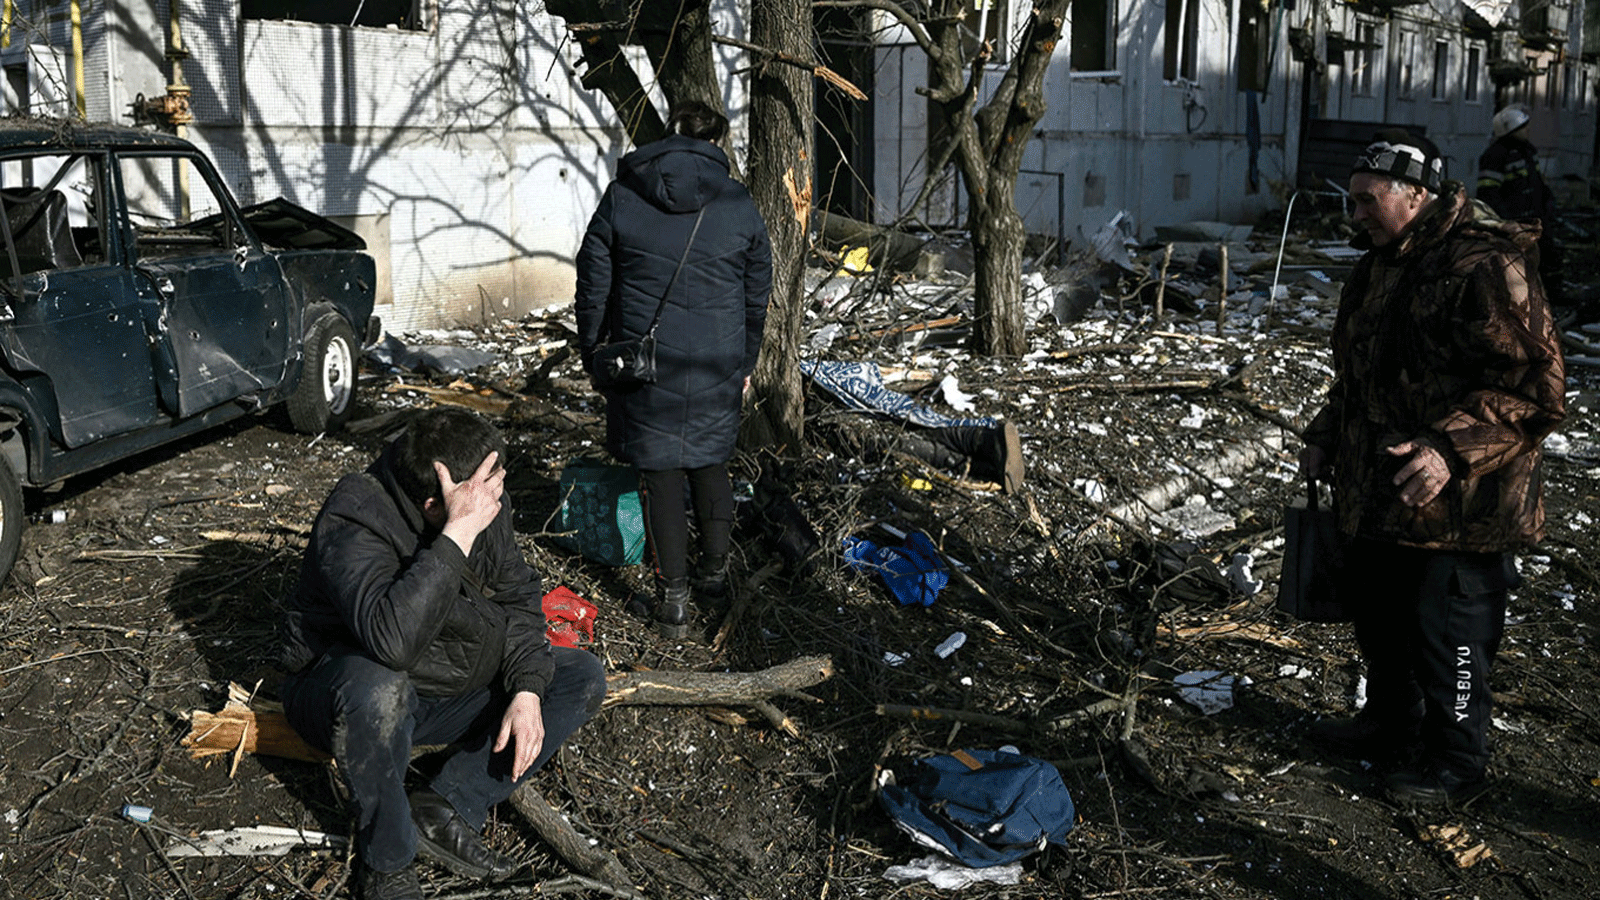 أشخاص يراقبون مخلفات القصف في بلدة تشوغويف بشرق أوكرانيا في 24 شباط\ فبراير 2022.